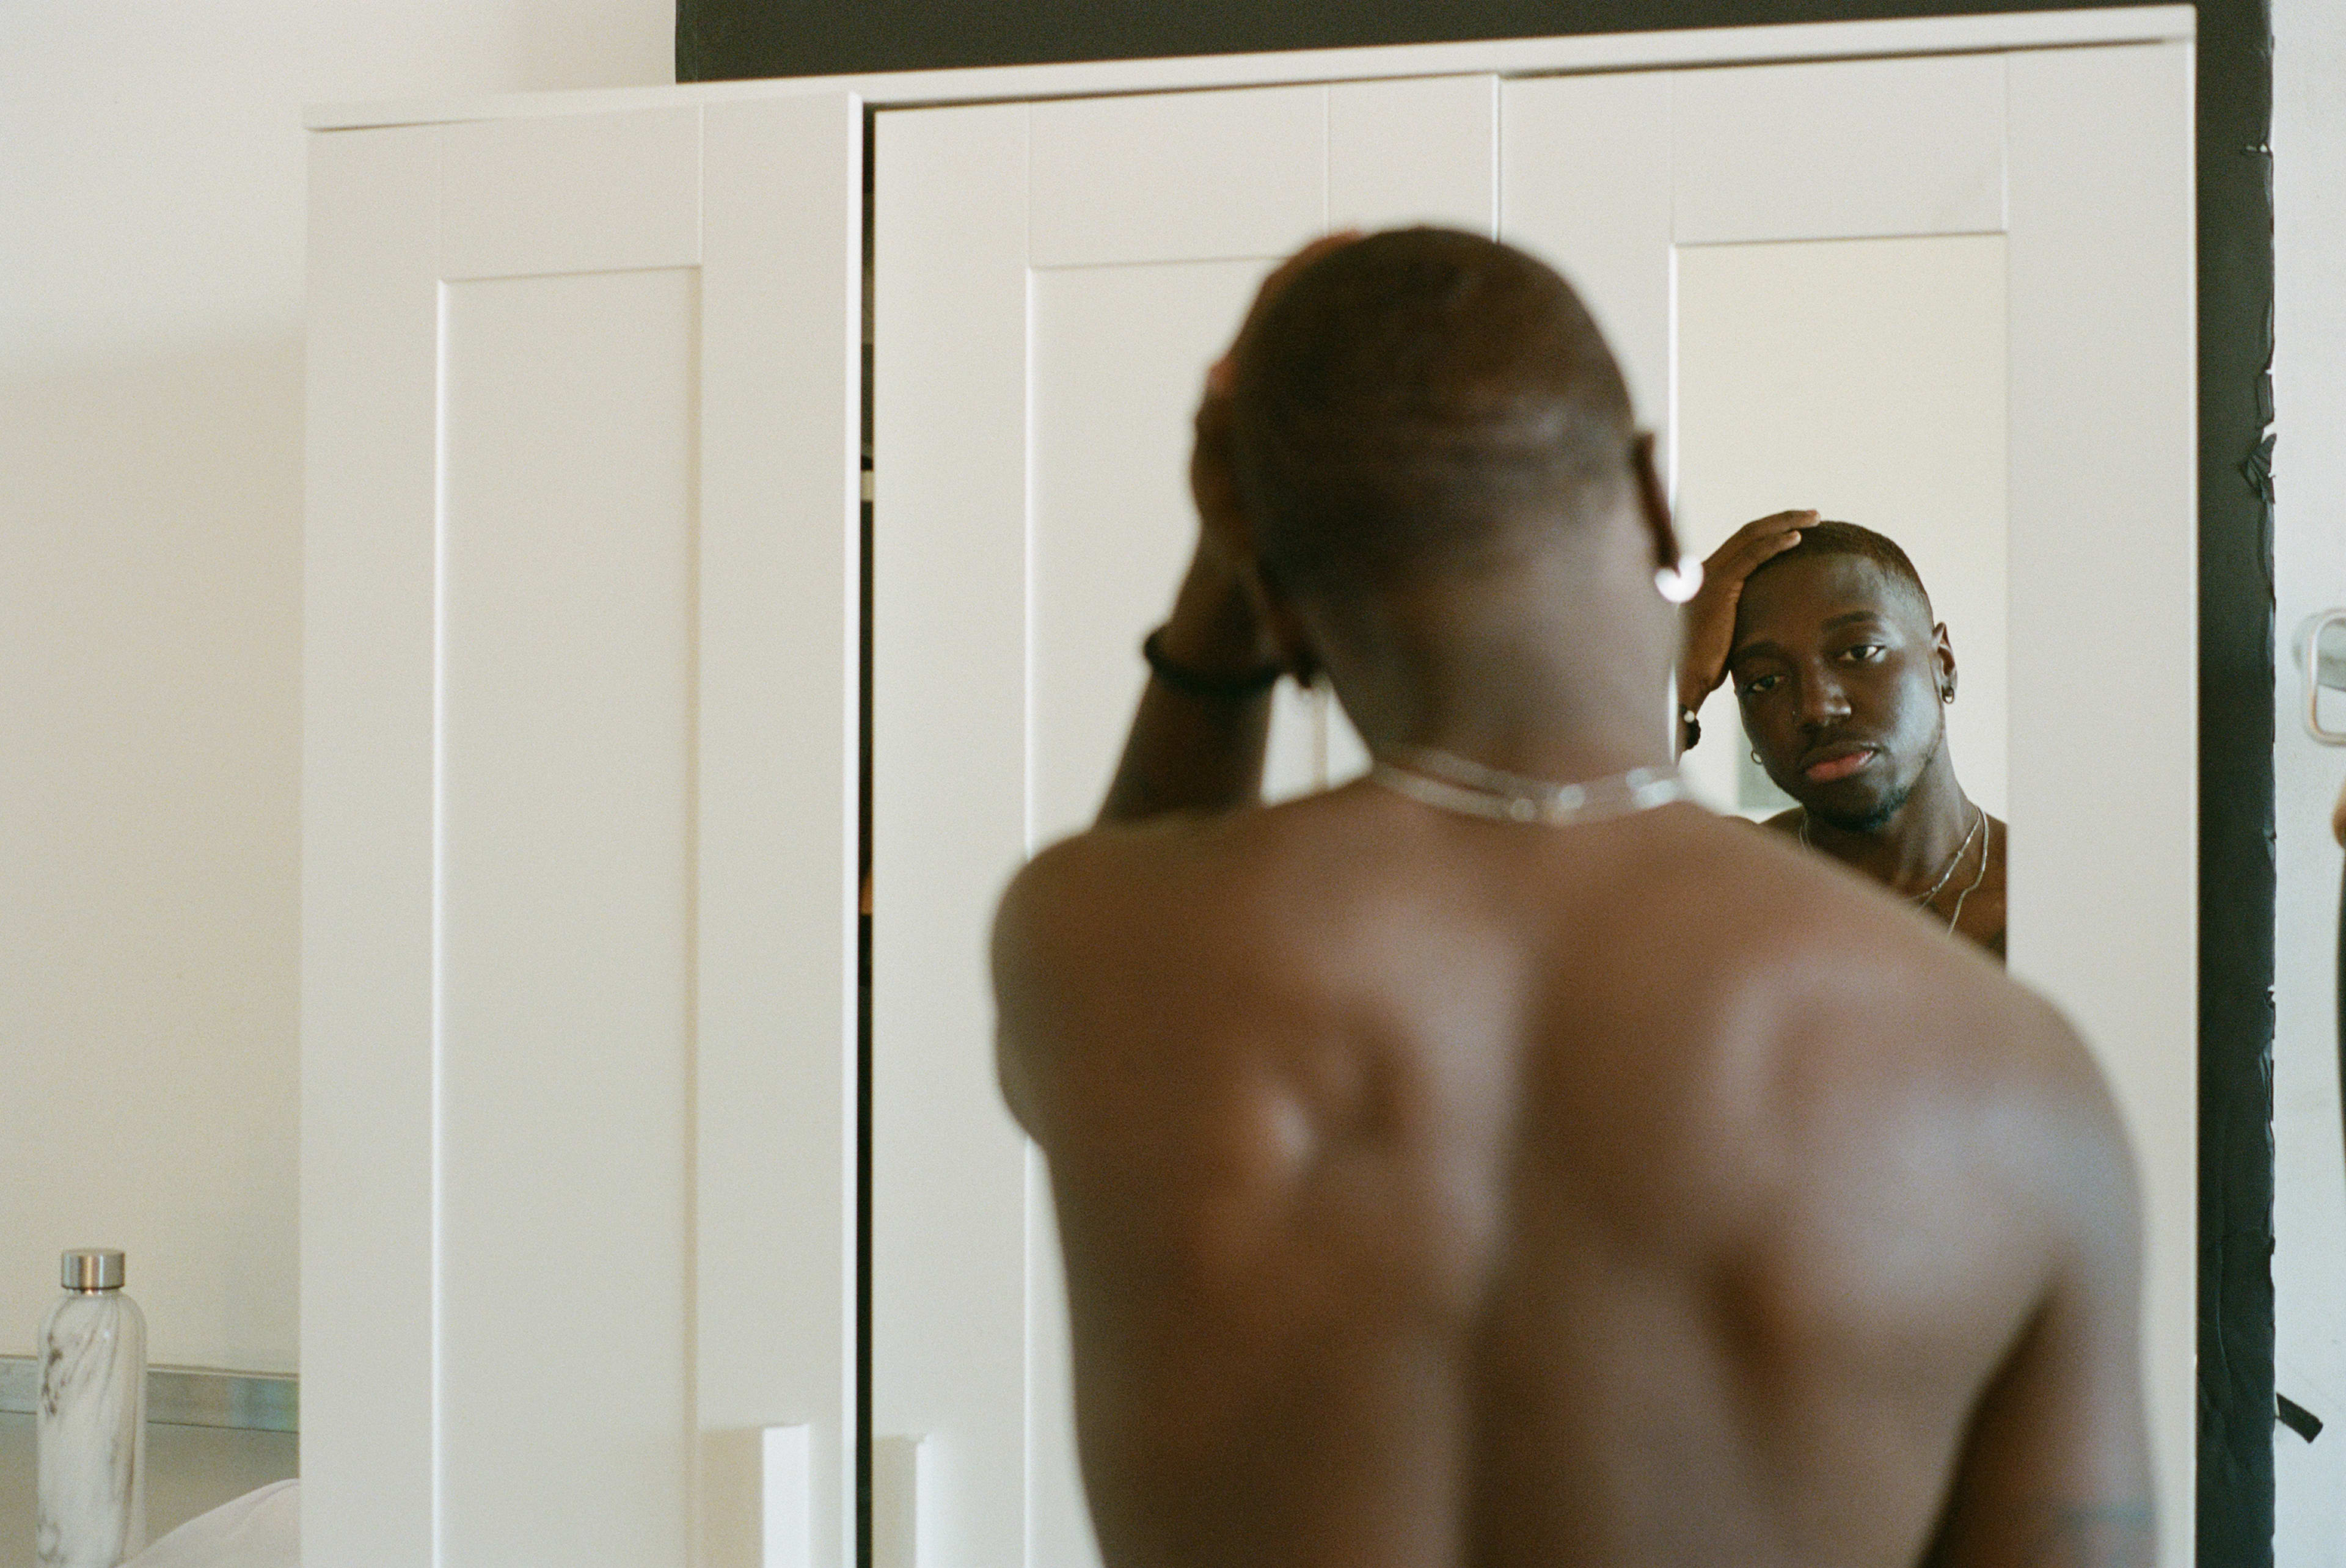 Una persona posando para una sesión de fotos minimalista en blanco mientras mira su reflejo en el espejo.